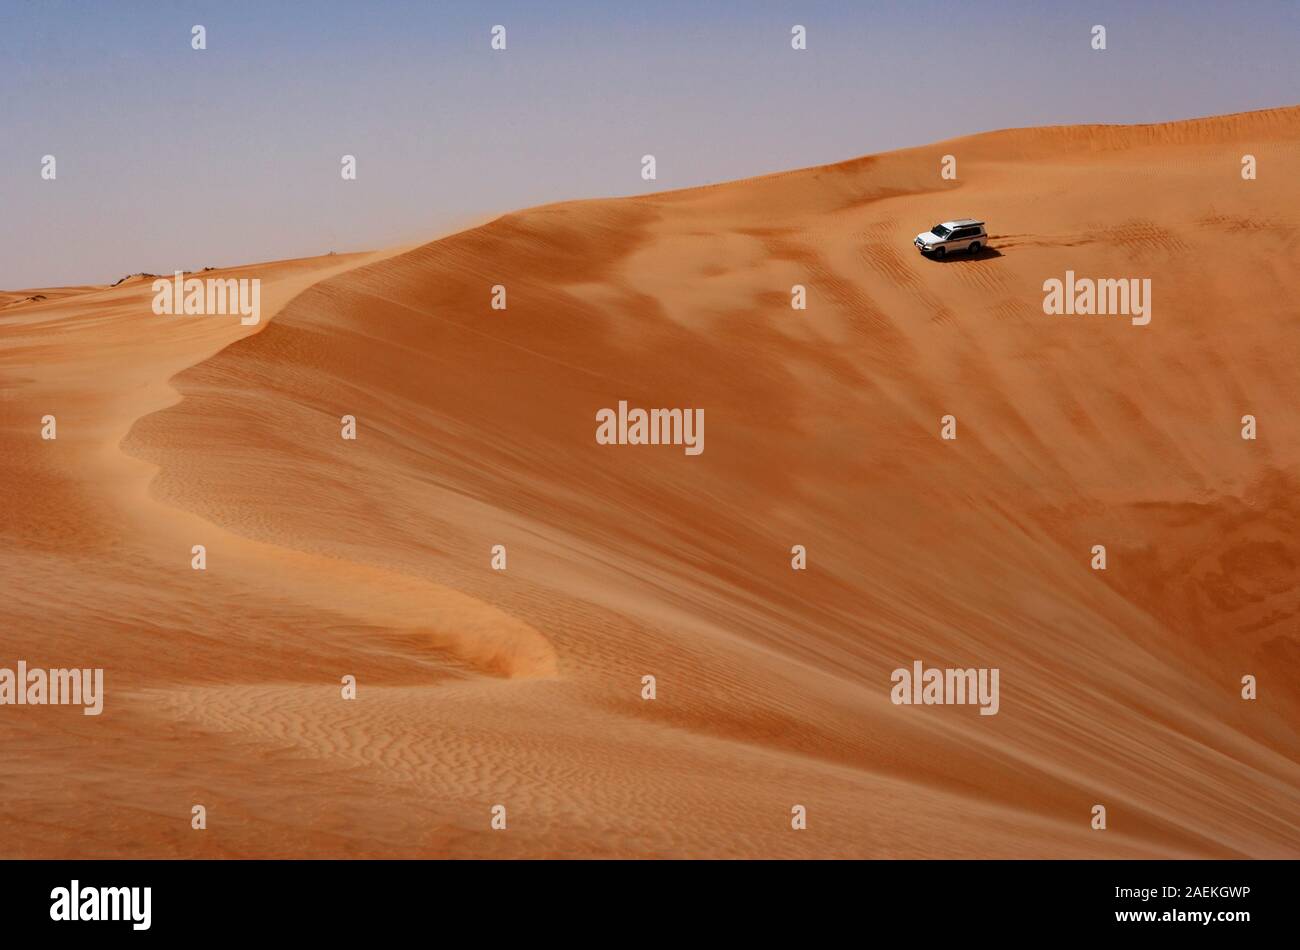 Véhicule hors route sur des disques durs, des dunes de sable du désert, safari dans le désert Wahiba Sands Rimal, Oman Banque D'Images